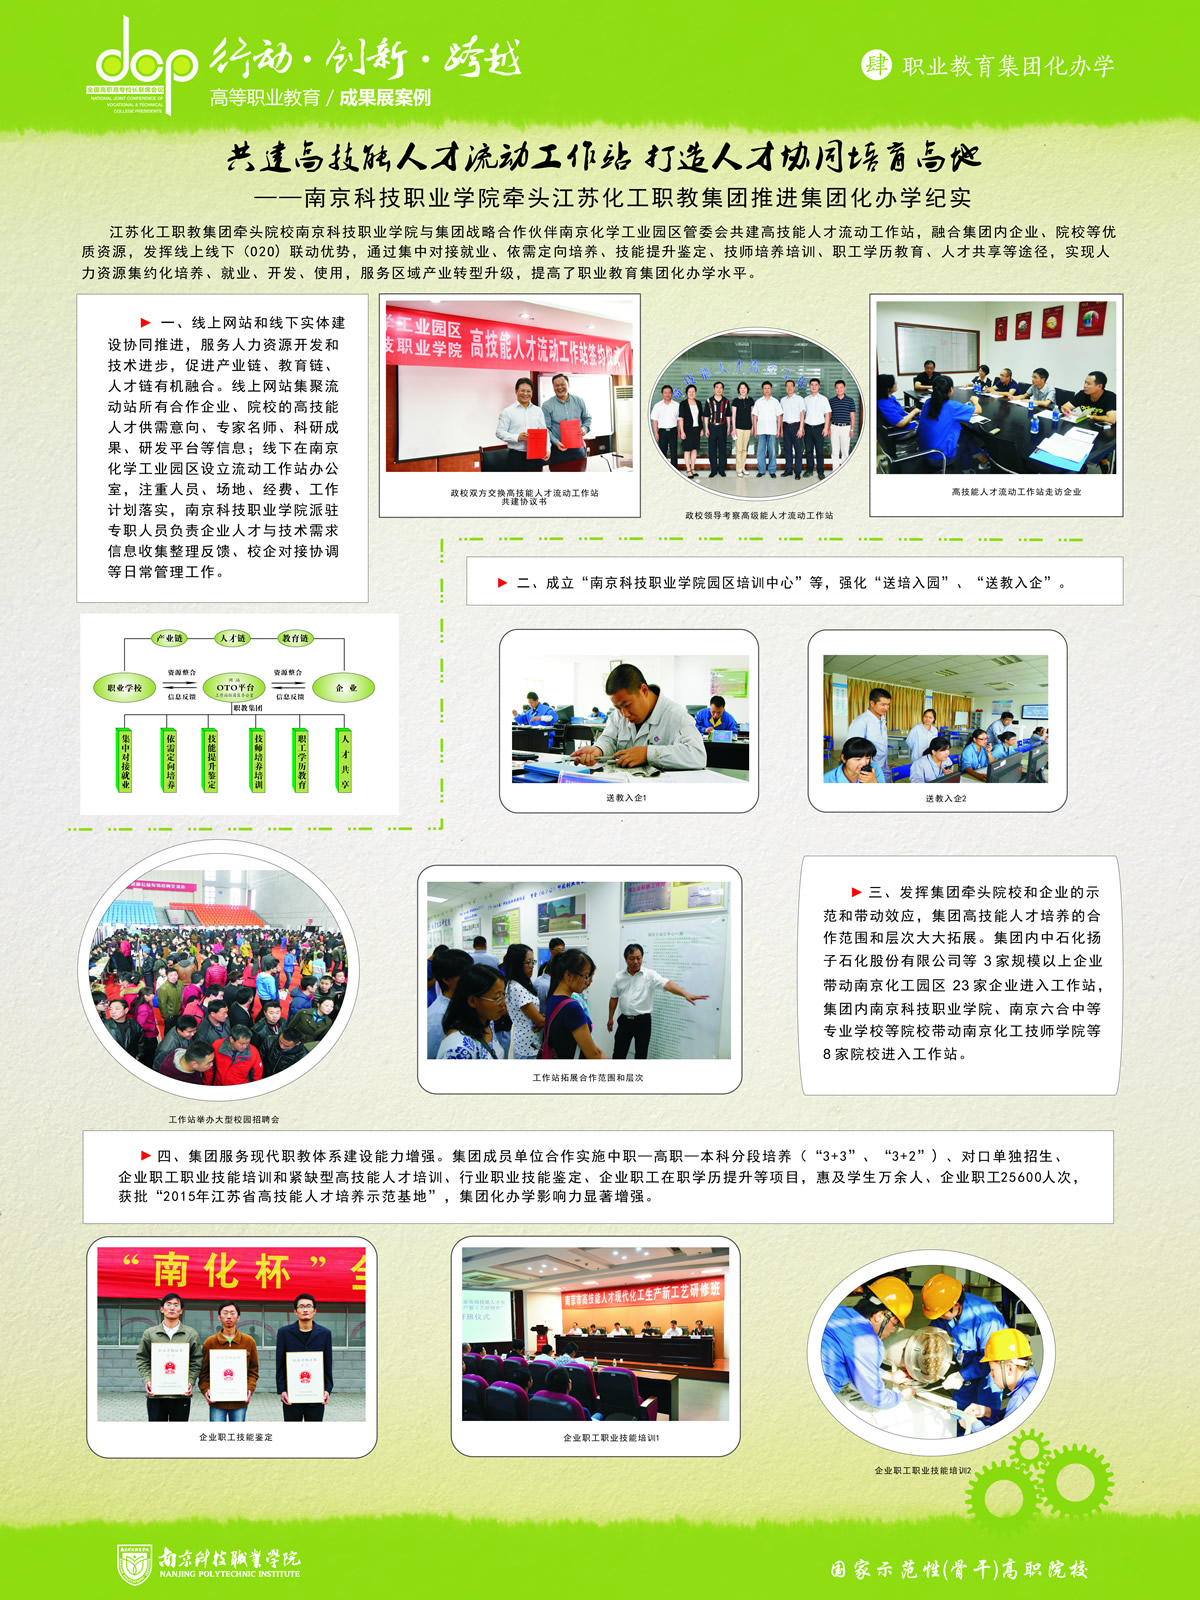 16南京科技职业学院++宣传展板++集团化办学.jpg